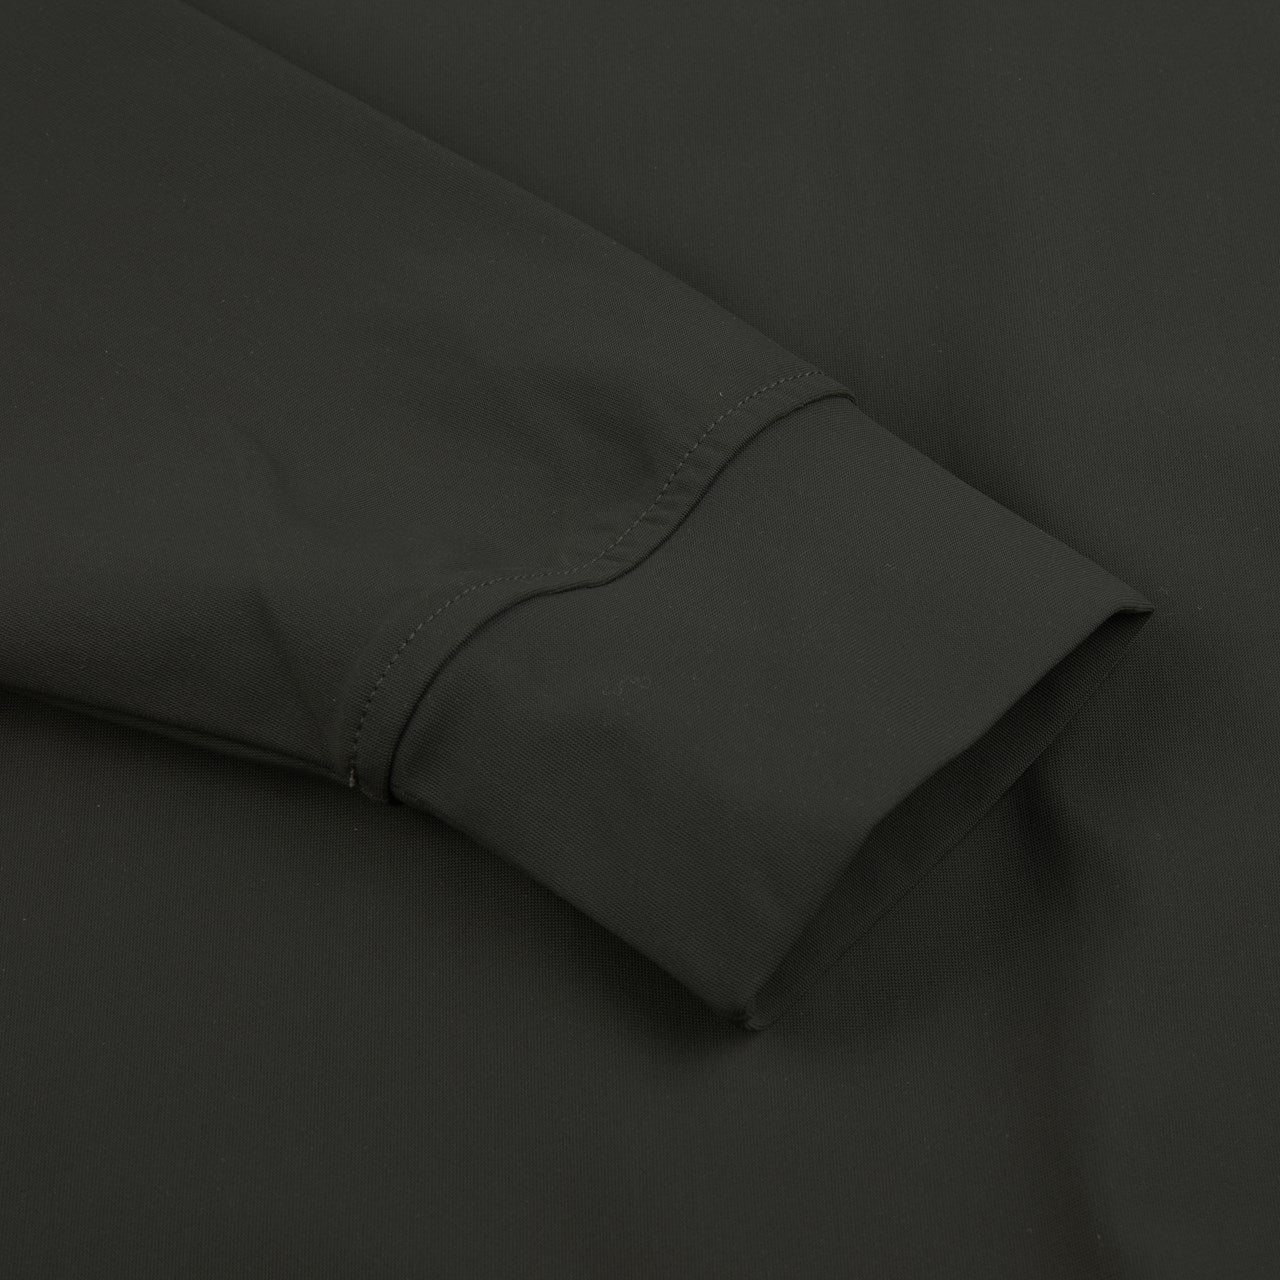 STENSTROMS - Dark Green Full-Zip Leisure Jacket in 4 Way Stretch Fabric